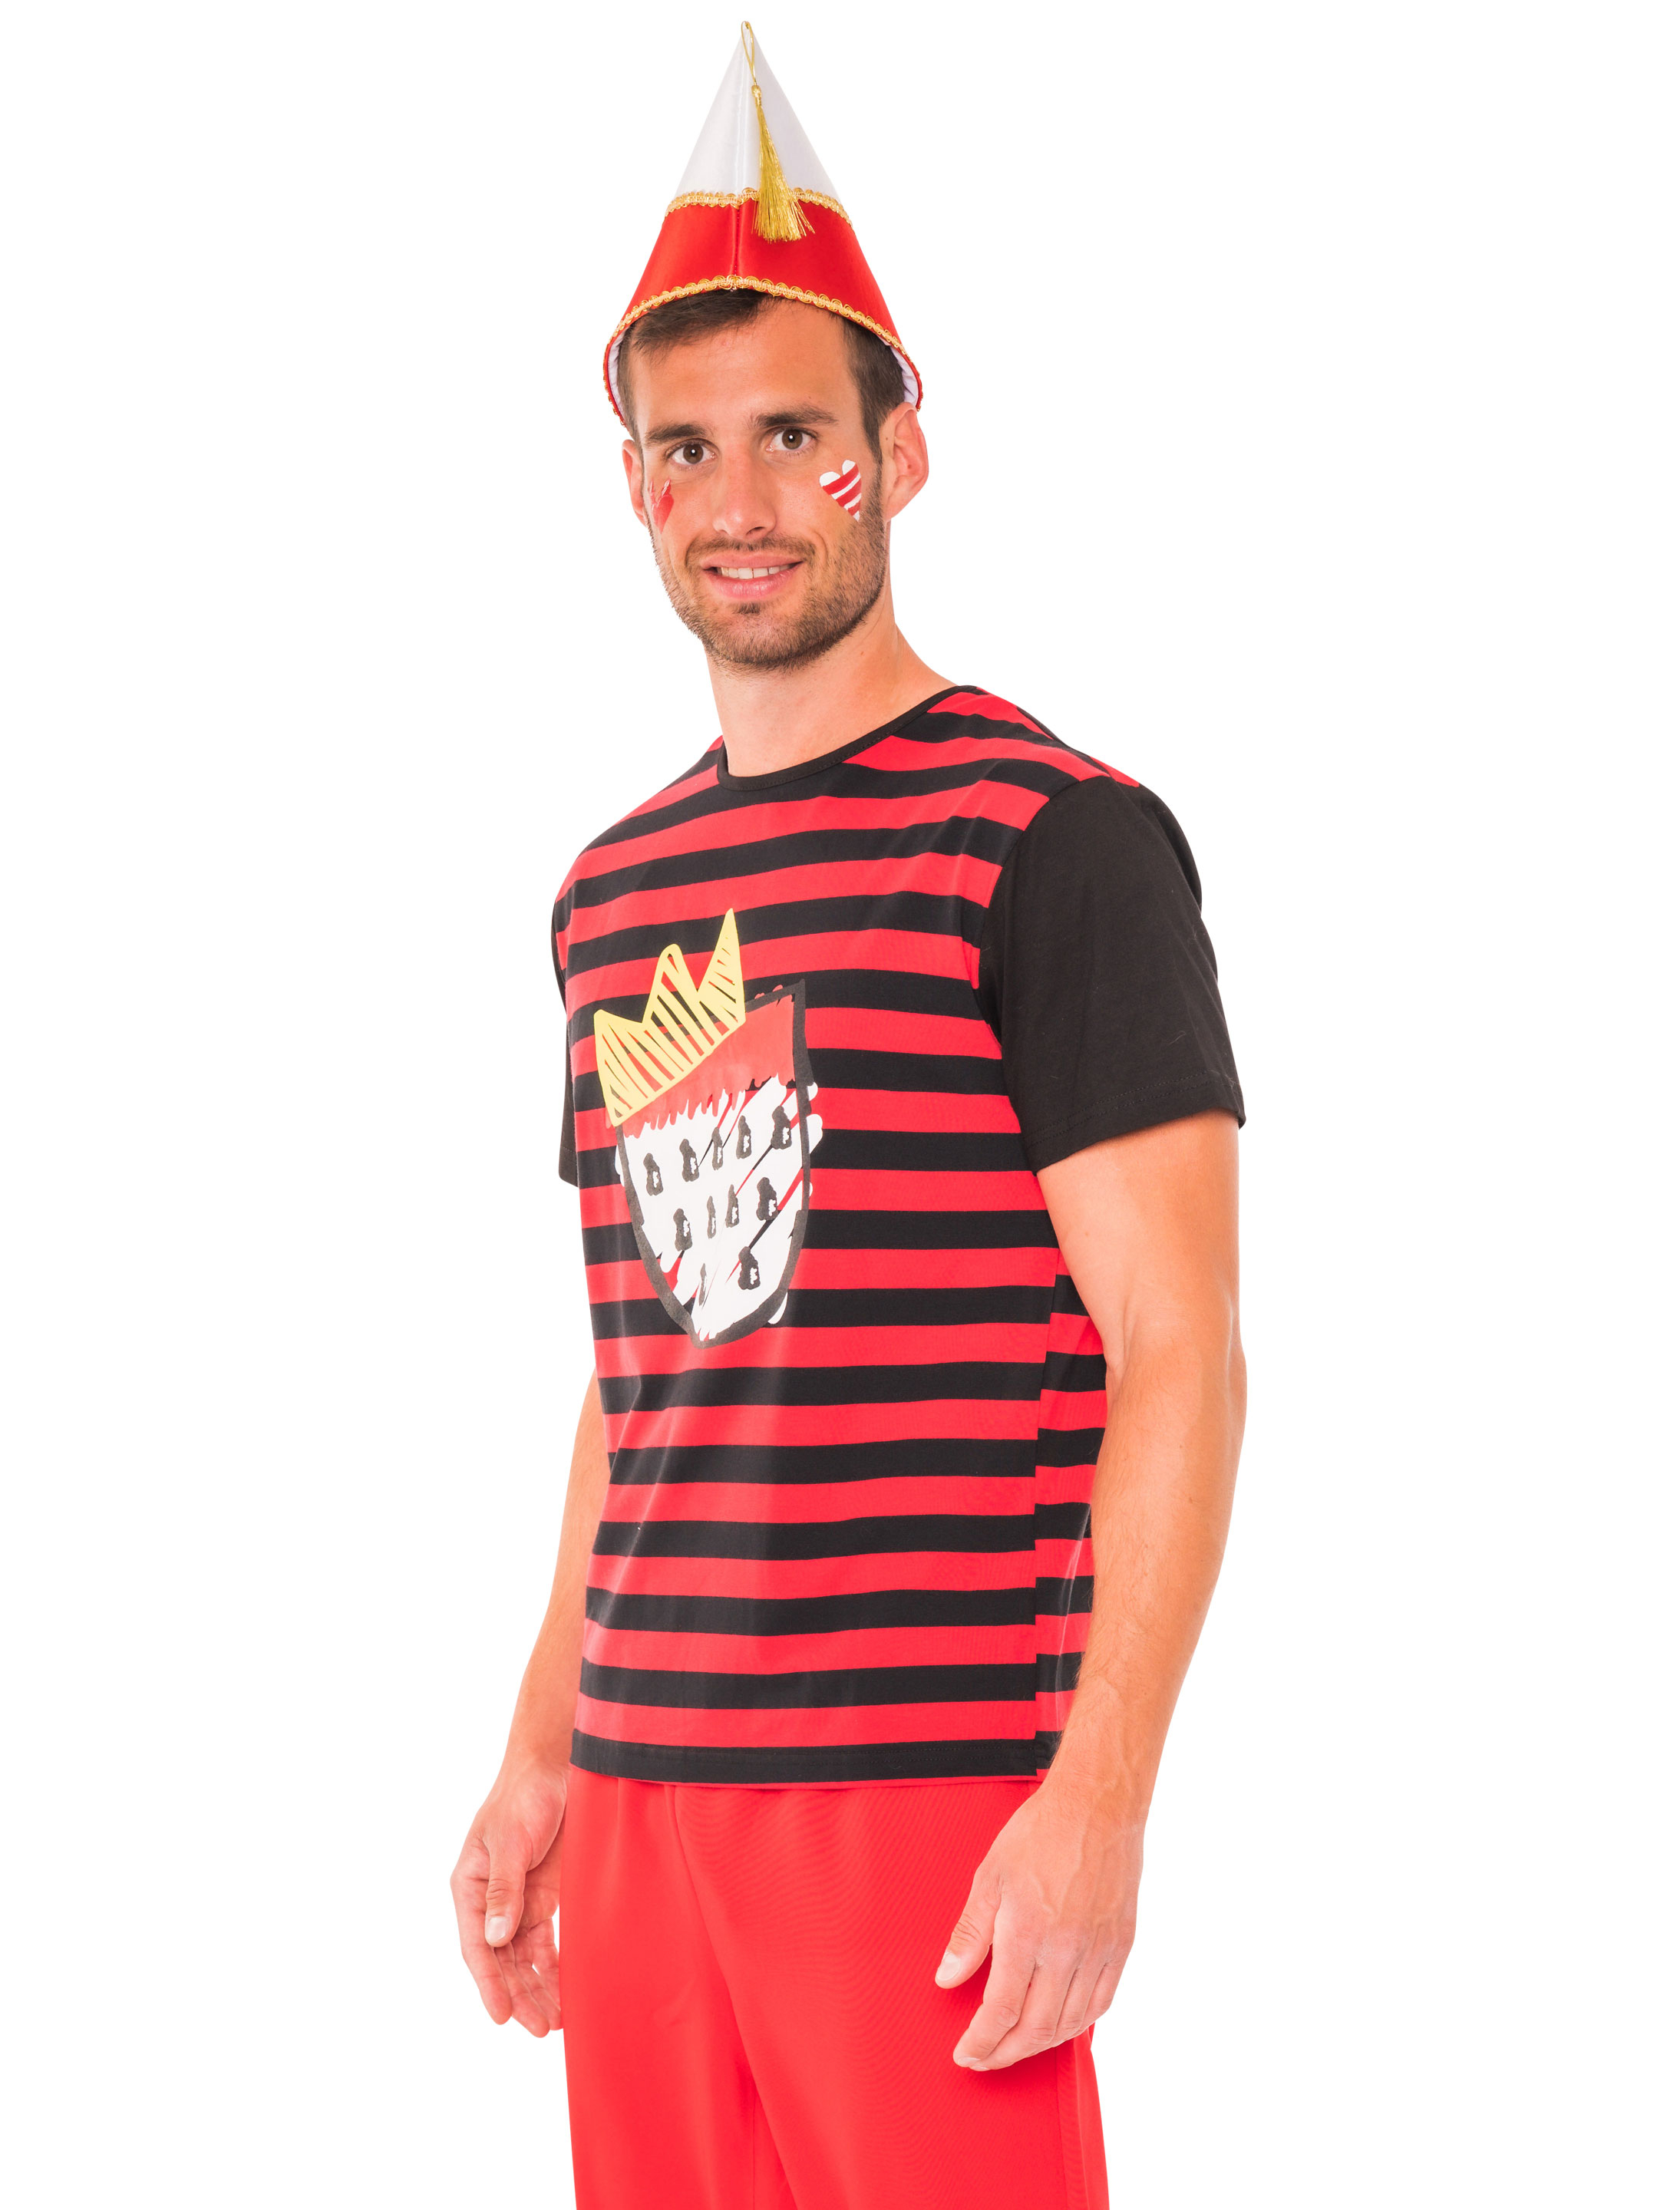 T-Shirt Köln Herren mit Wappen schwarz/rot S